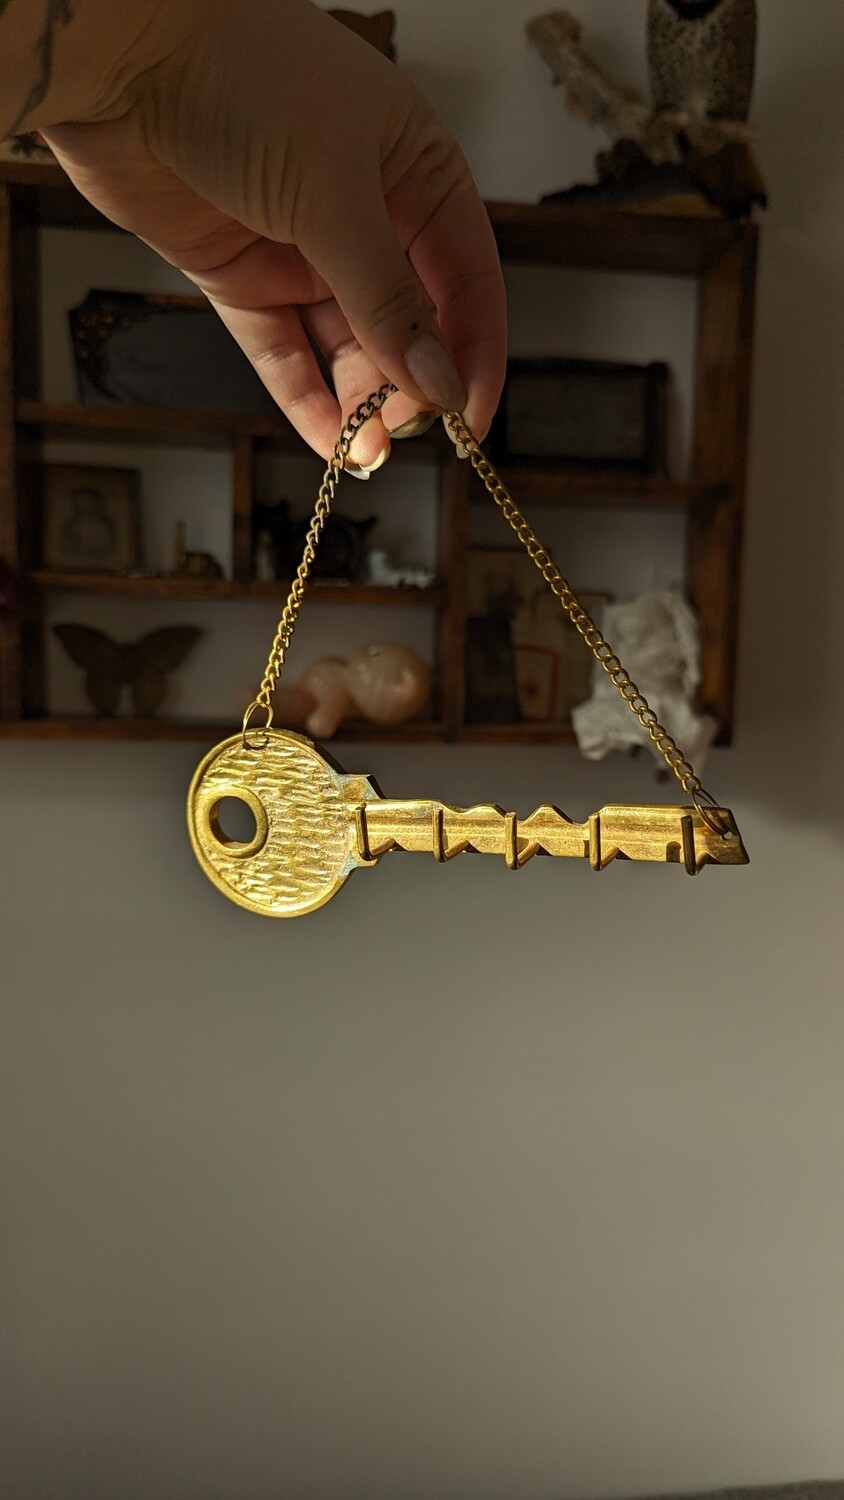 Brass key keys holder